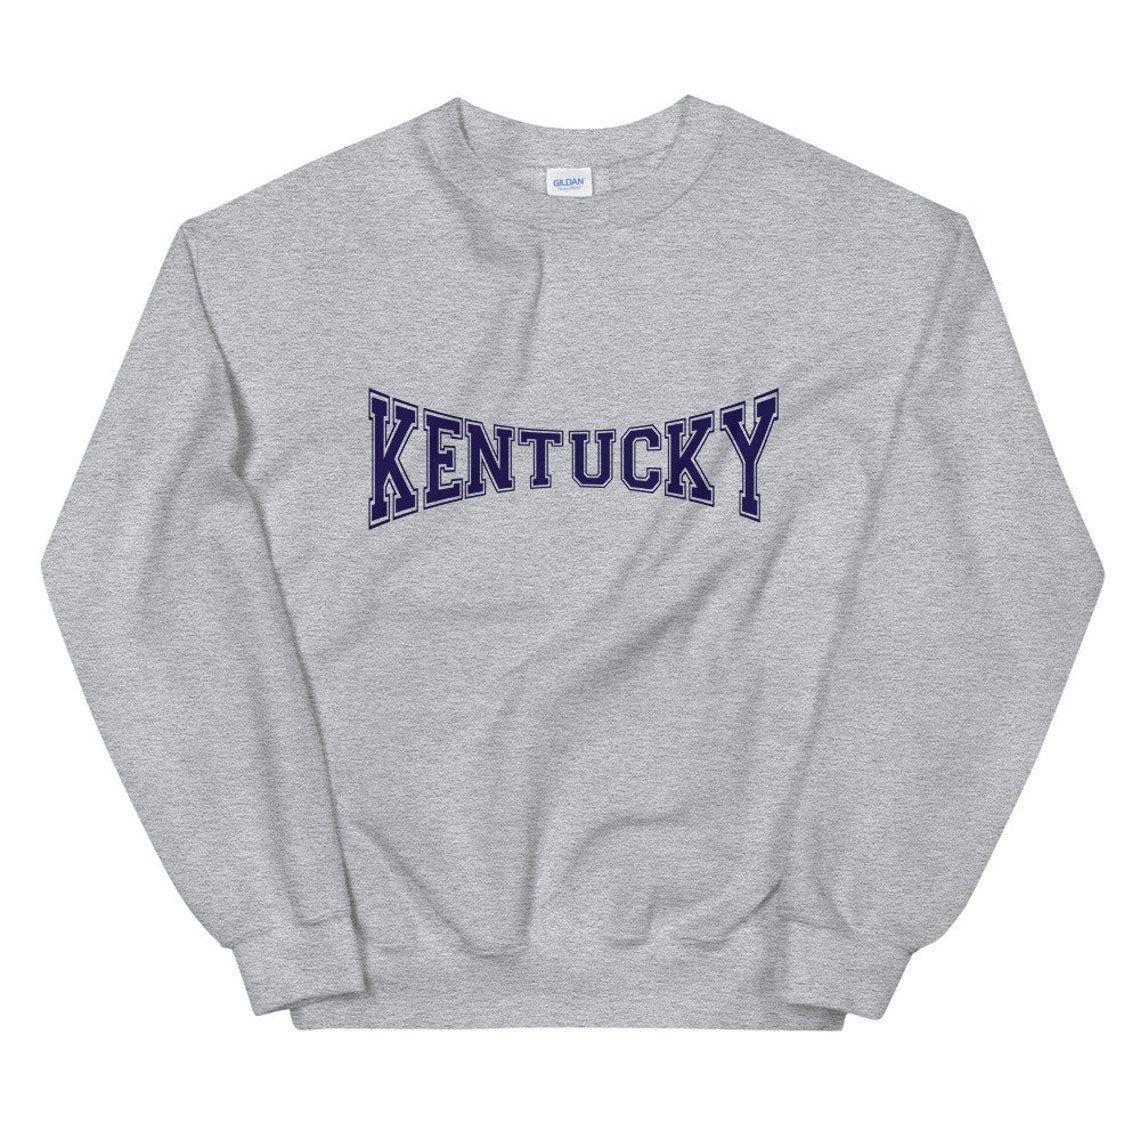 Kentucky Sweatshirt Kentucky Unisex Sweatshirt | Etsy